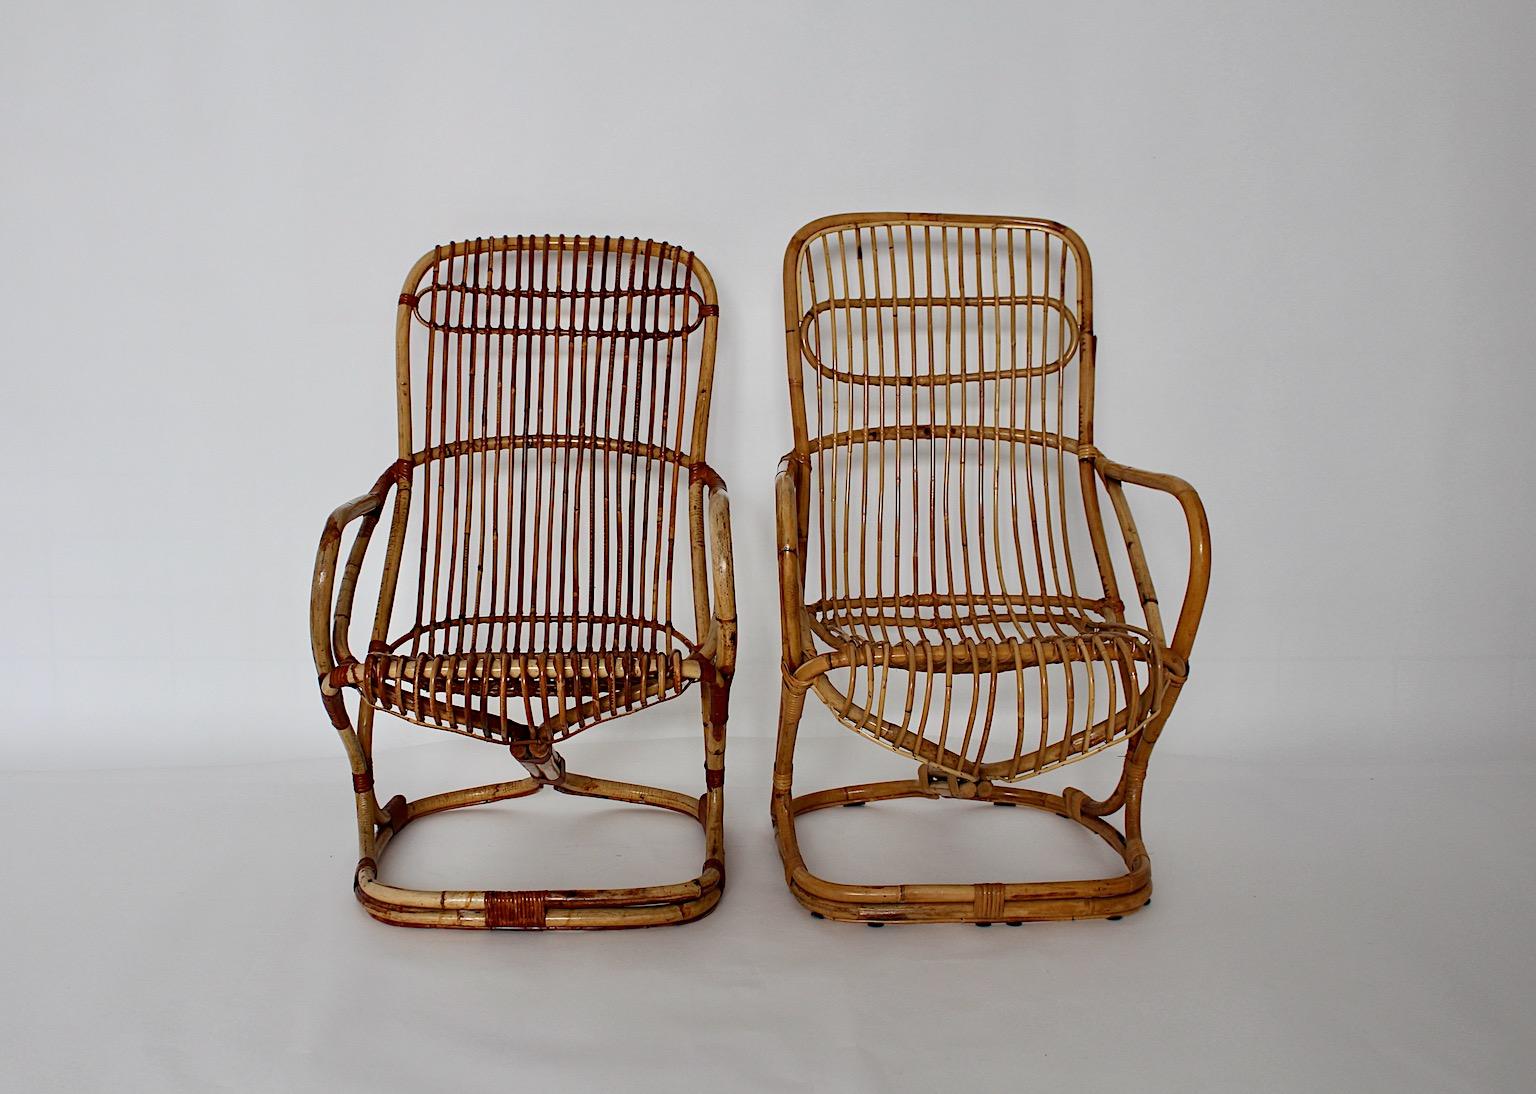 Mid-Century Modern Riviera Stil Vintage gebogenen Bambus Rattan Satz von zwei Garten Terrasse Sessel oder Lounge Stühle entworfen, 1960er Jahre, Italien.

Das Set aus Rattansesseln wirkt durch seine schöne Form und seine natürliche Ausstrahlung sehr